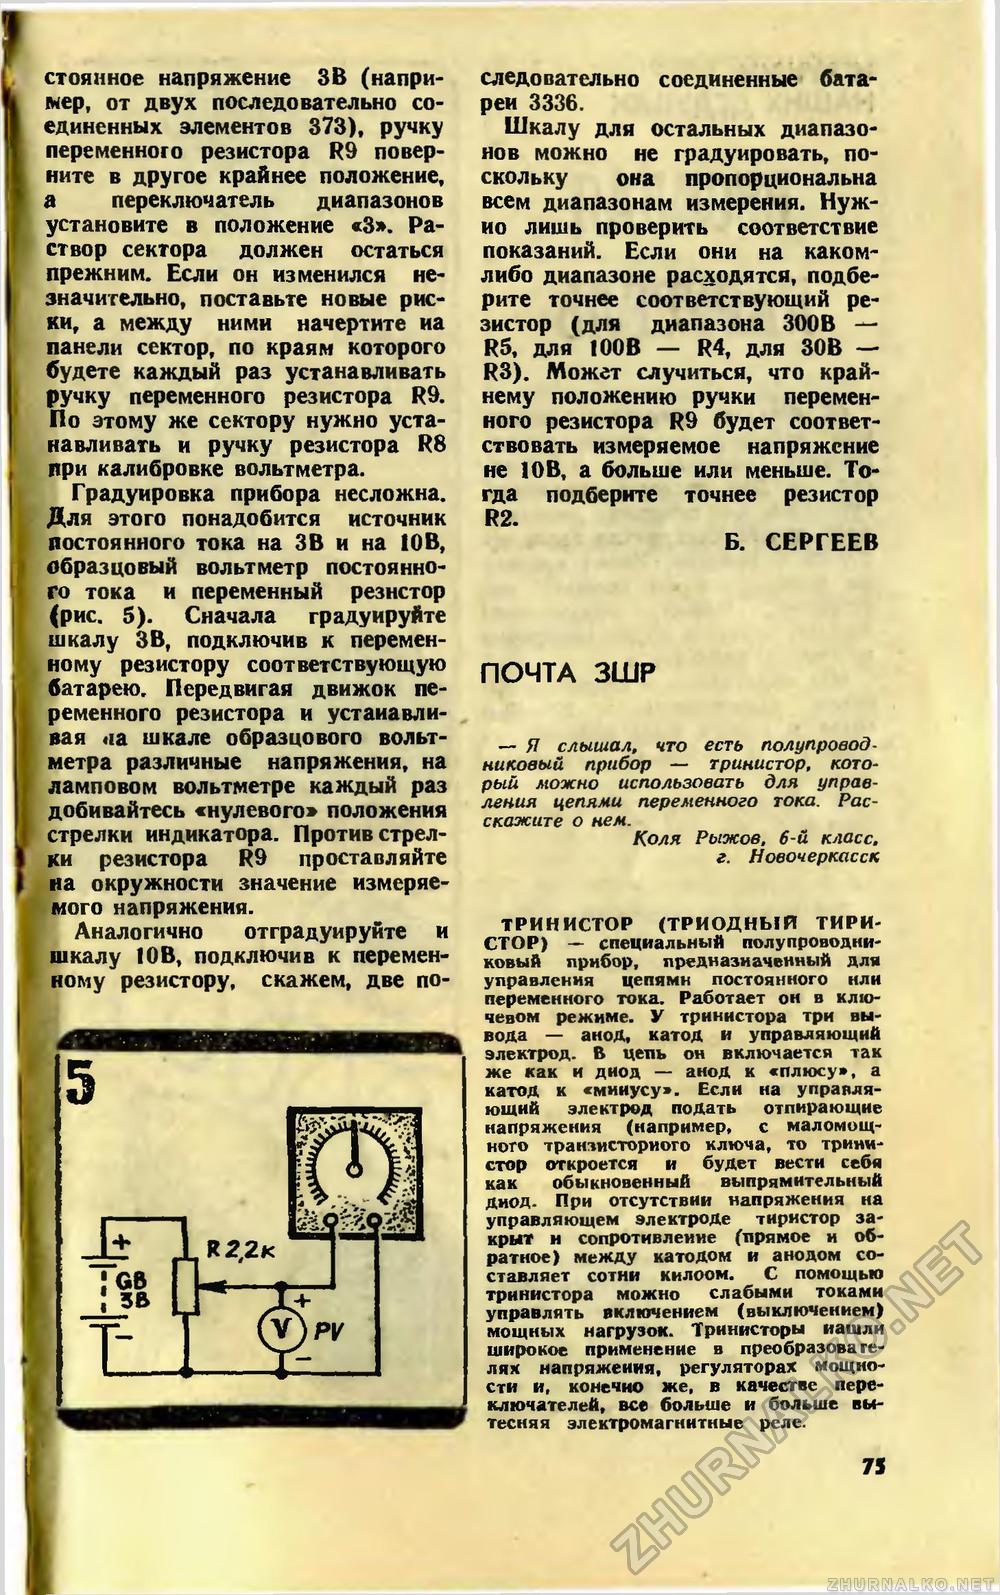   1989-08,  78